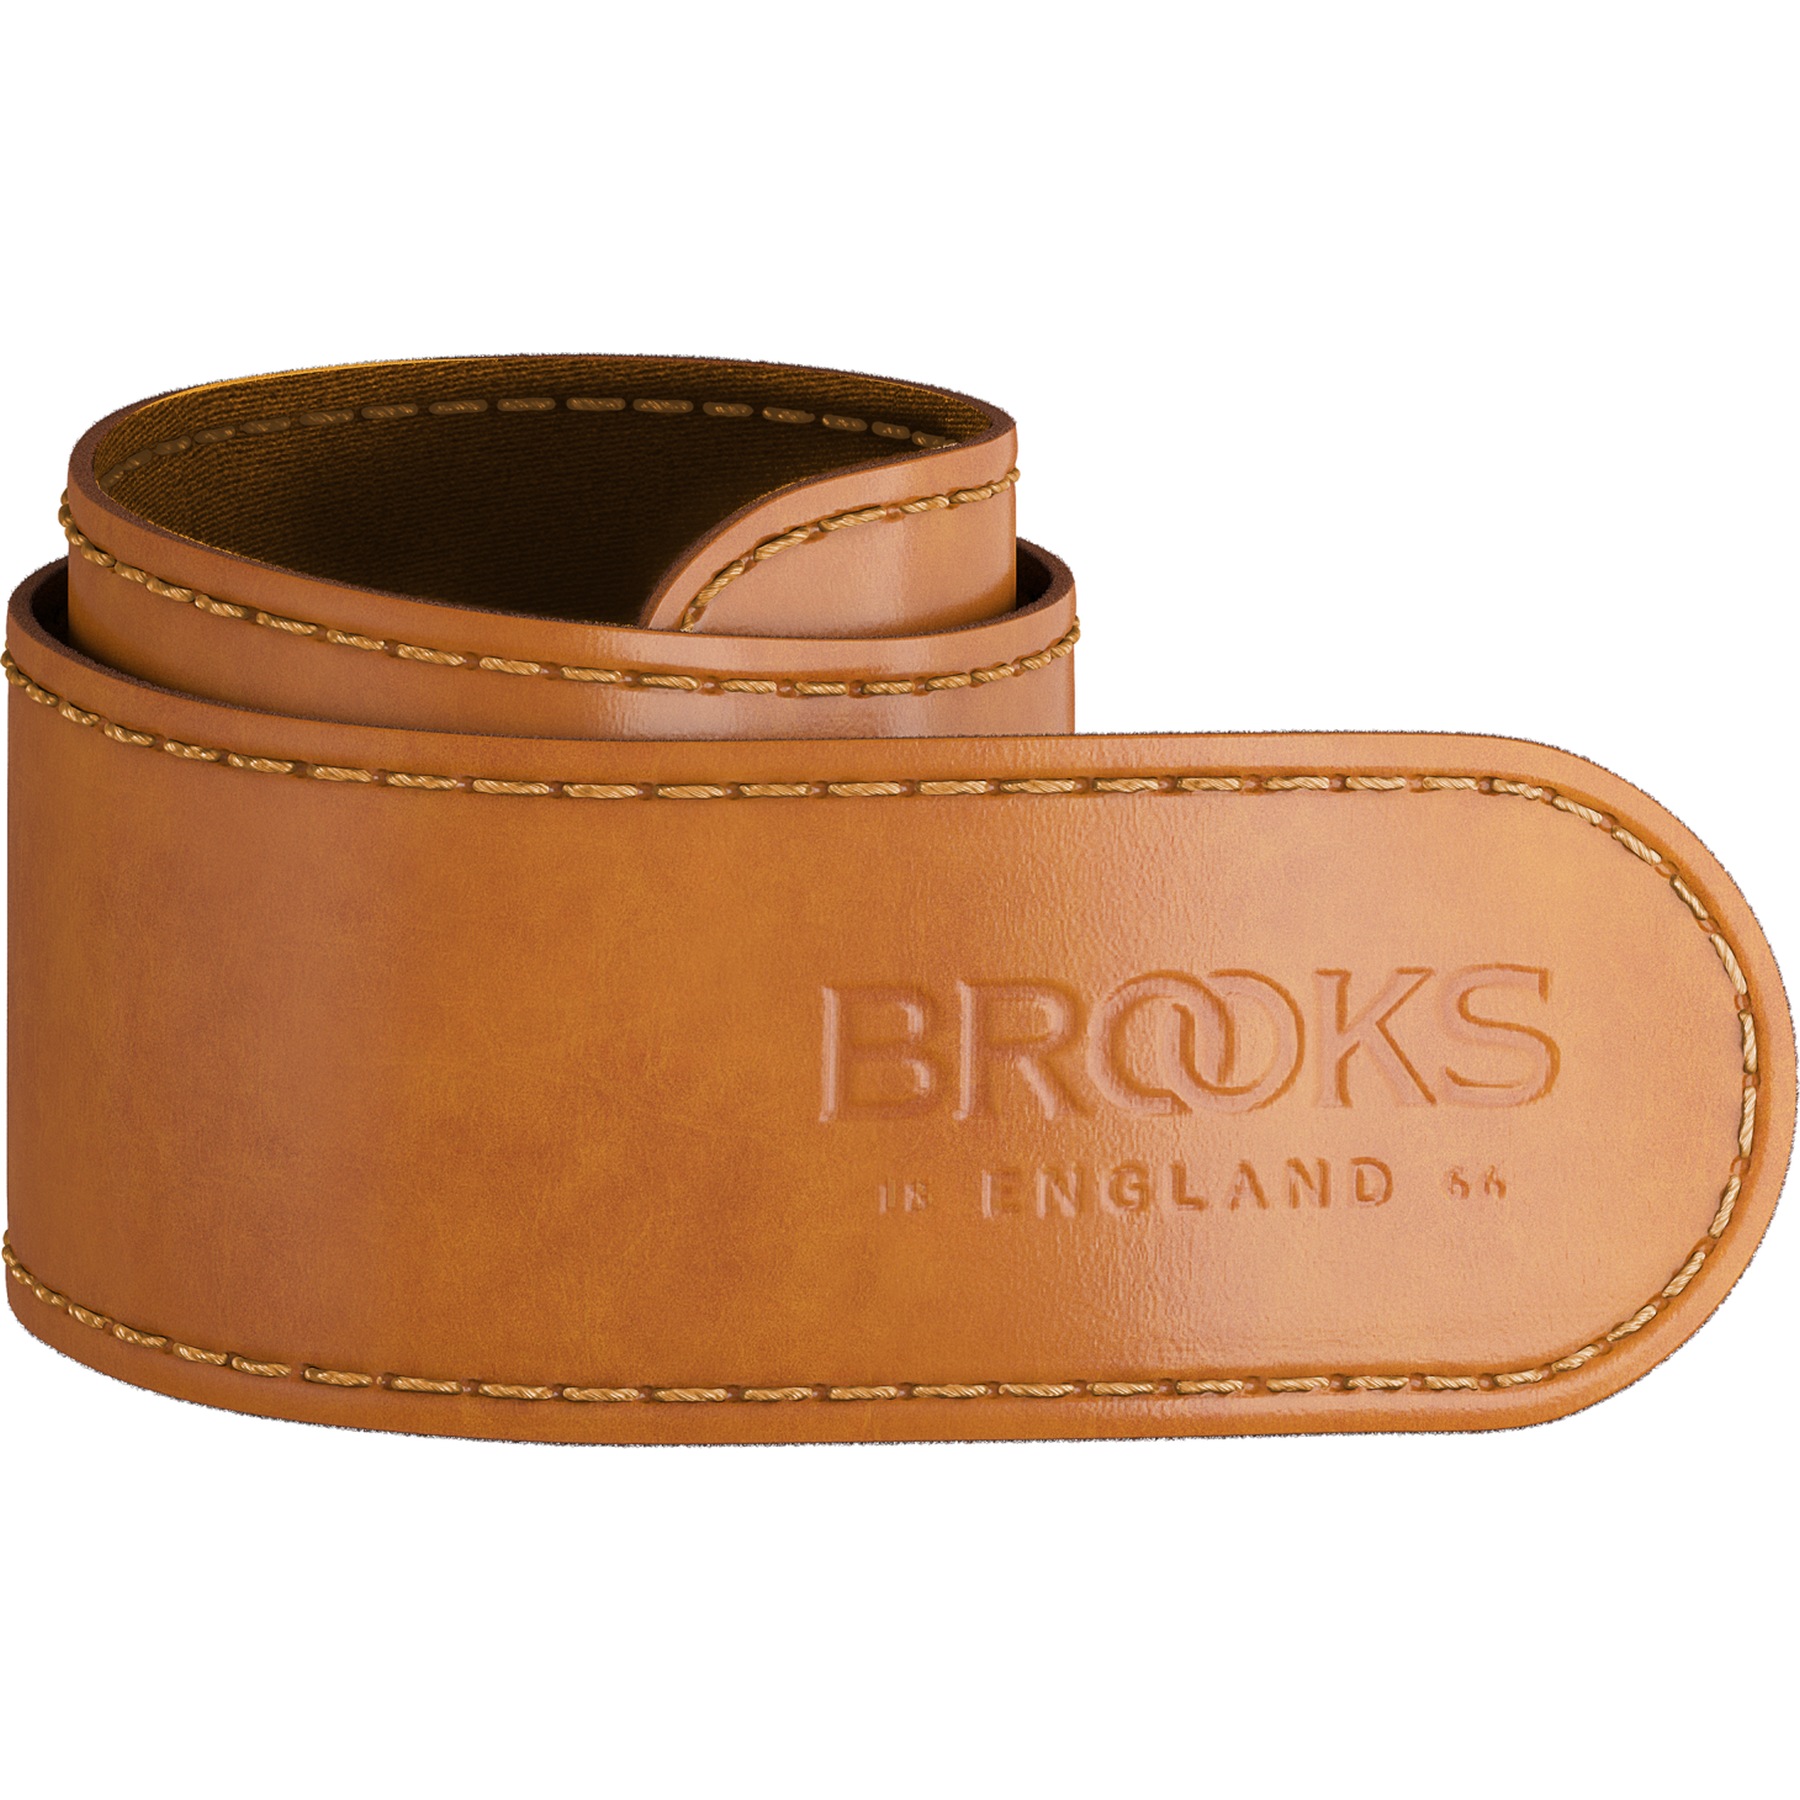 Produktbild von Brooks Trouser Strap Hosenbeinschutz - Honey